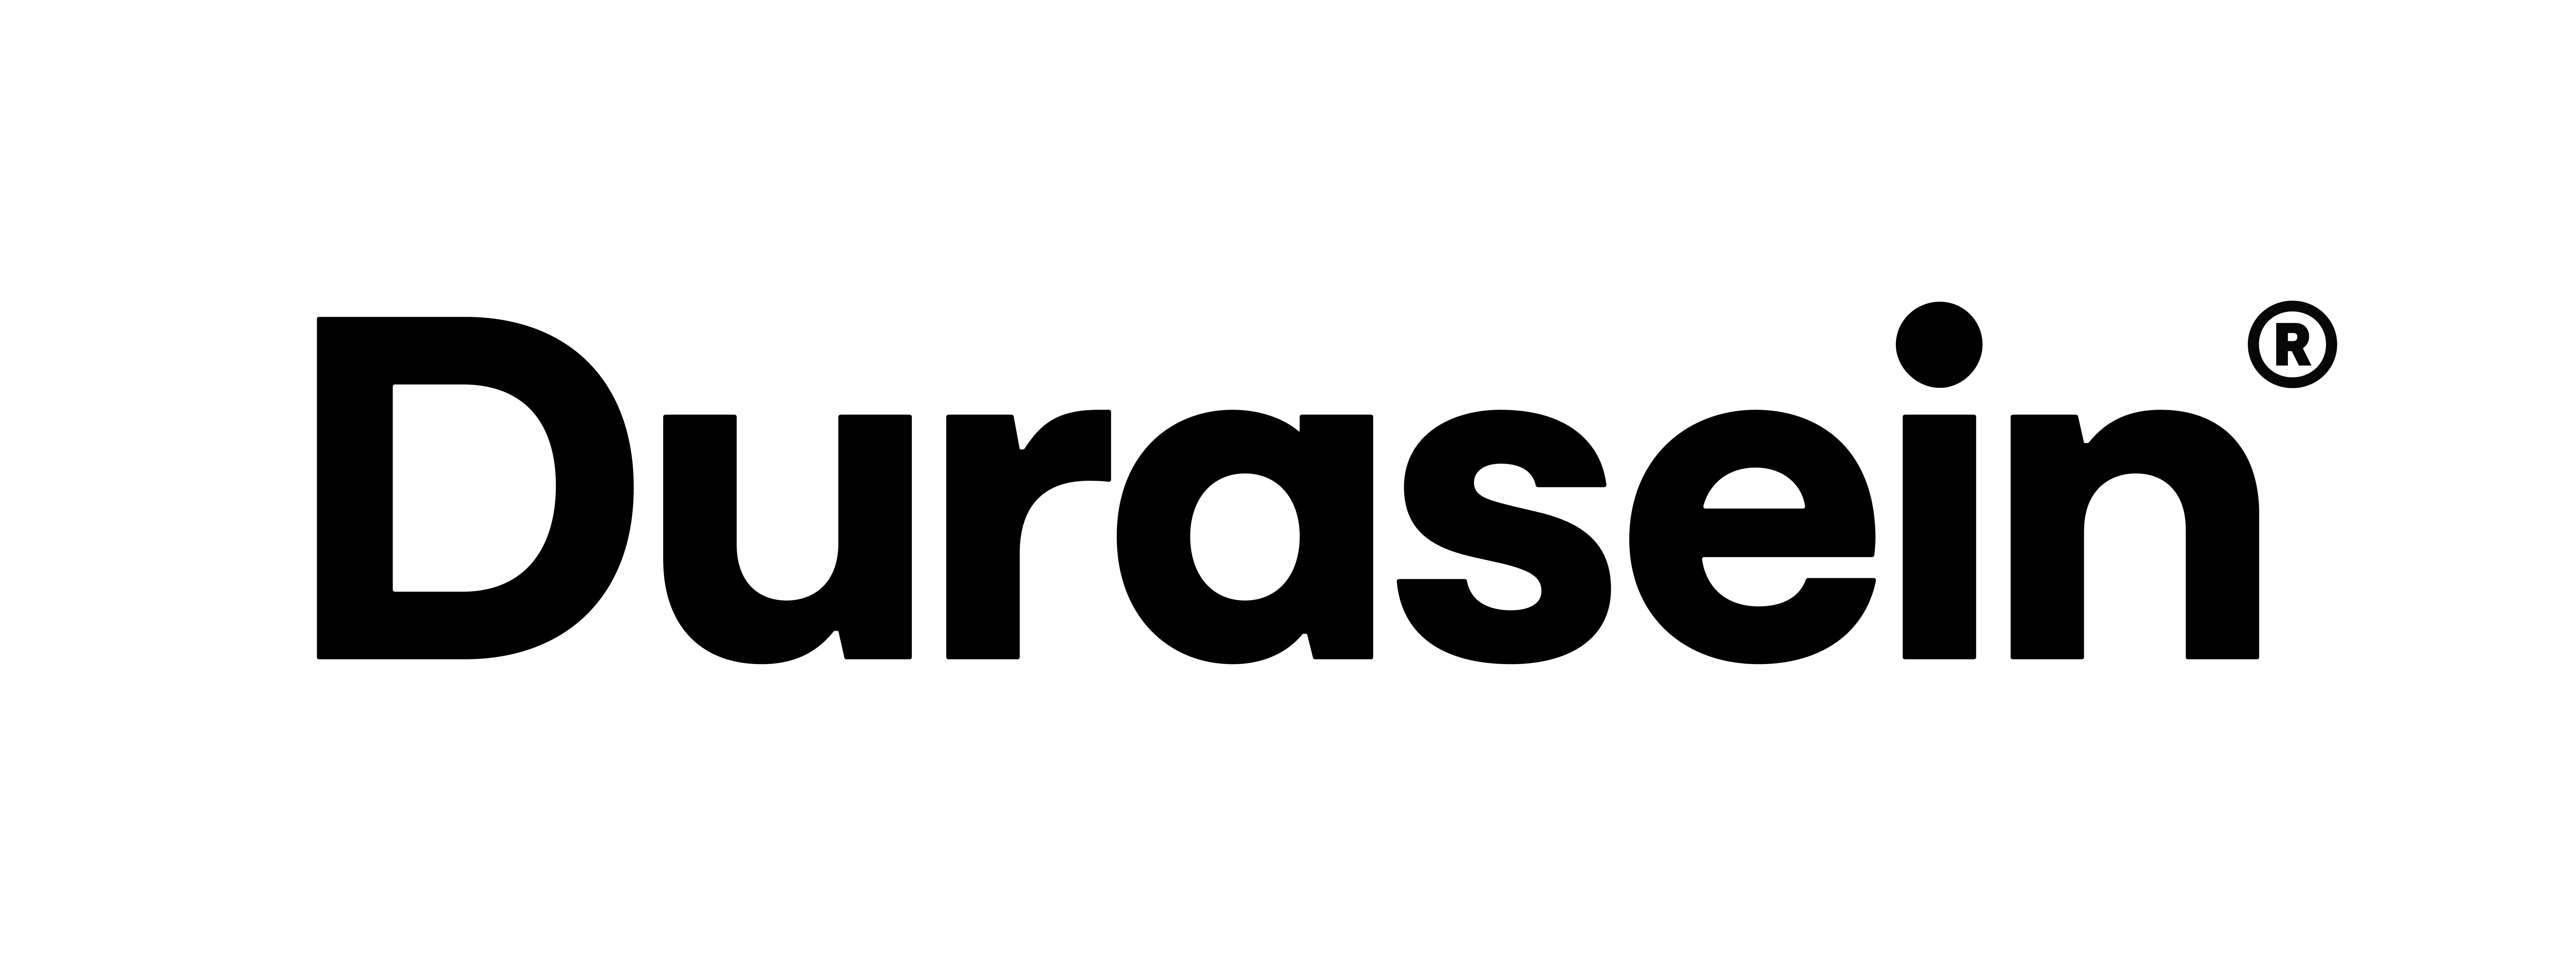 Durasein logo